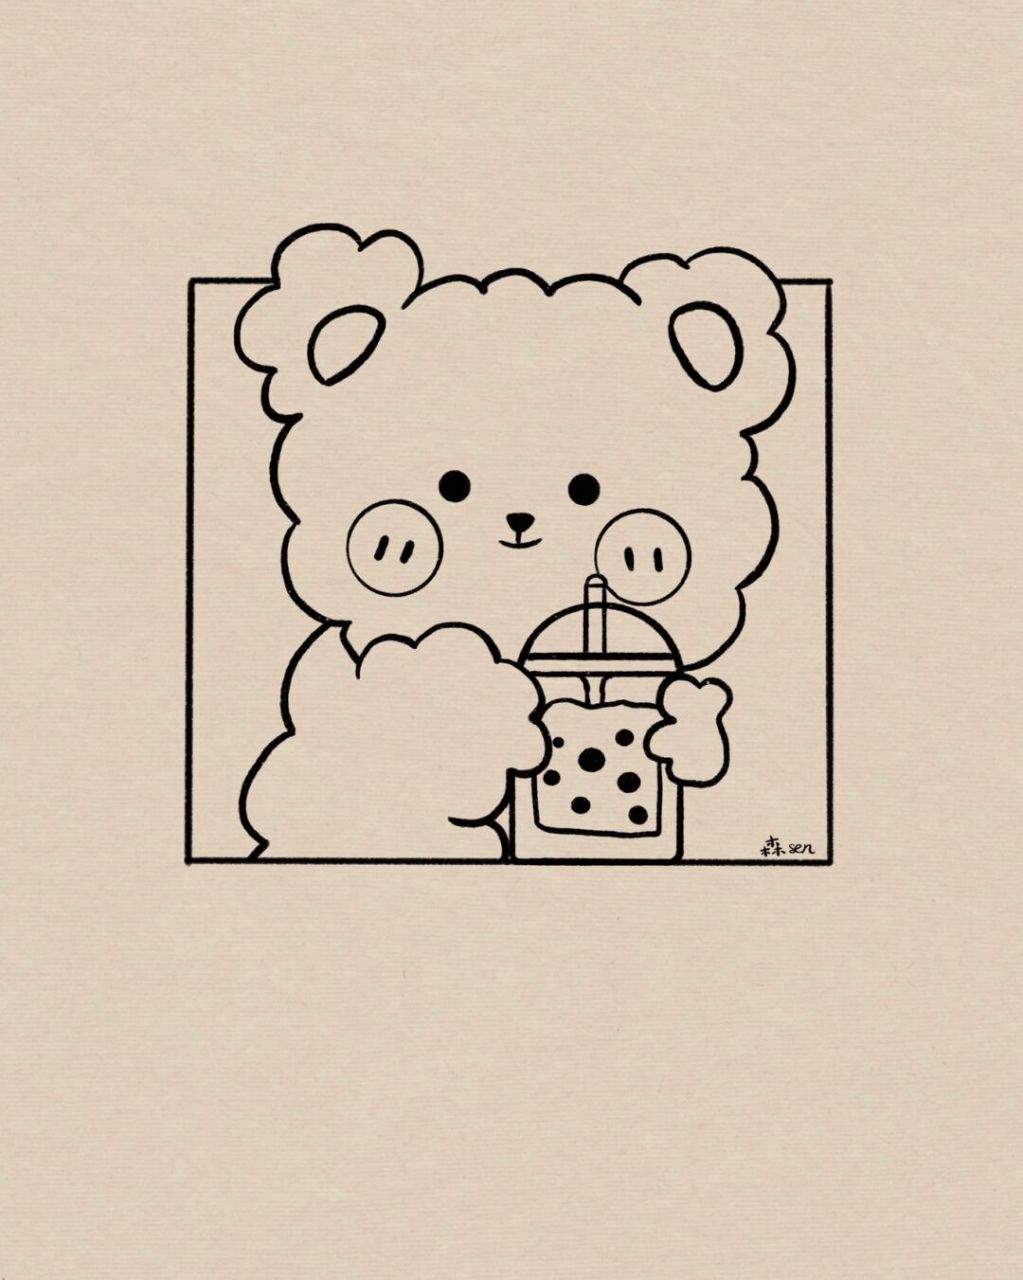 可爱珍珠奶茶熊壁纸图片